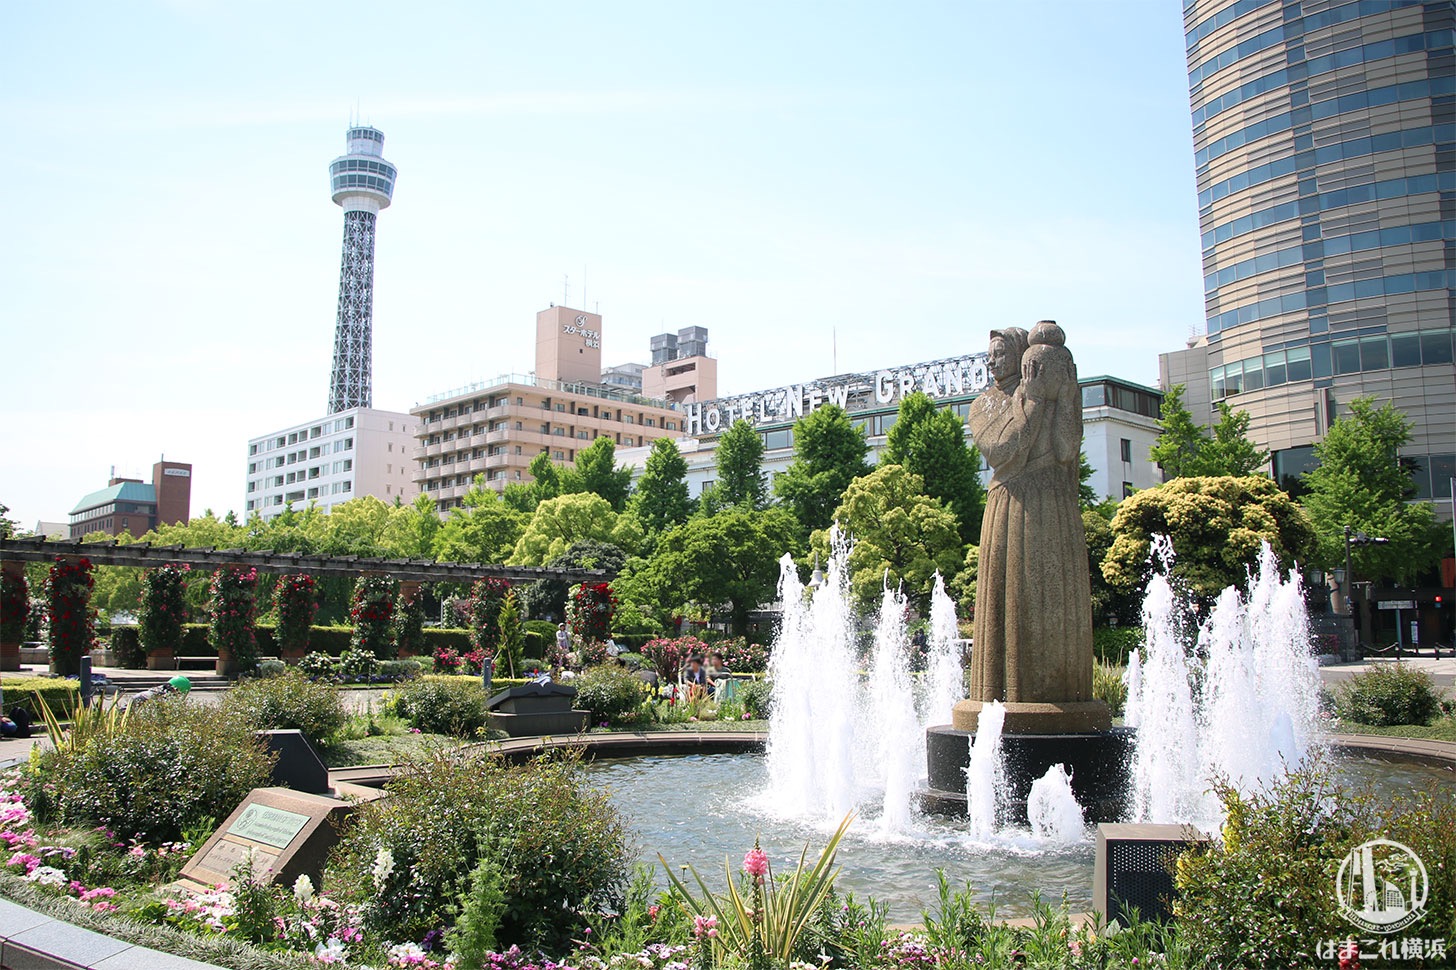 山下公園 噴水と横浜マリンタワー